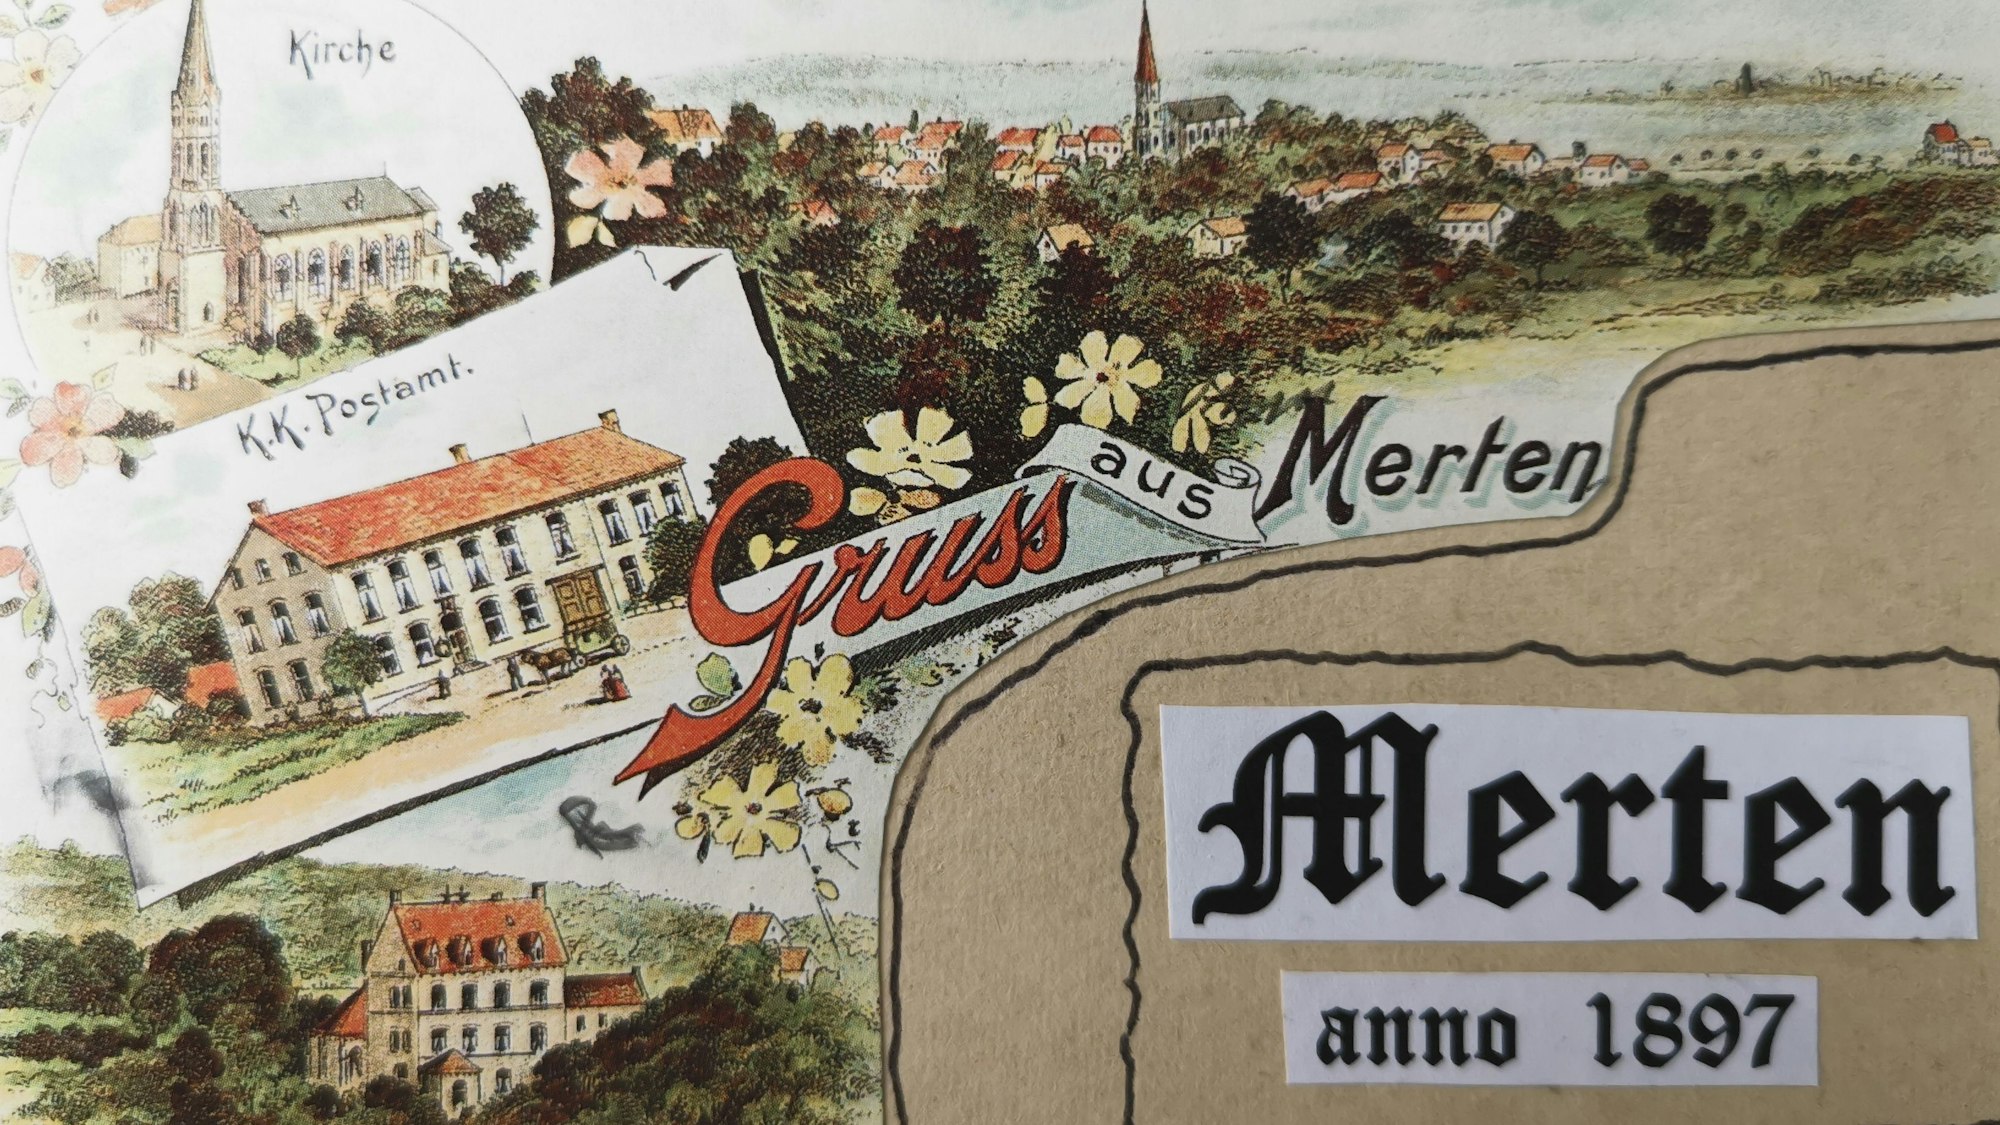 850 Jahre Merten: Die älteste bekannte Grußkarte aus dem Jahr 1897